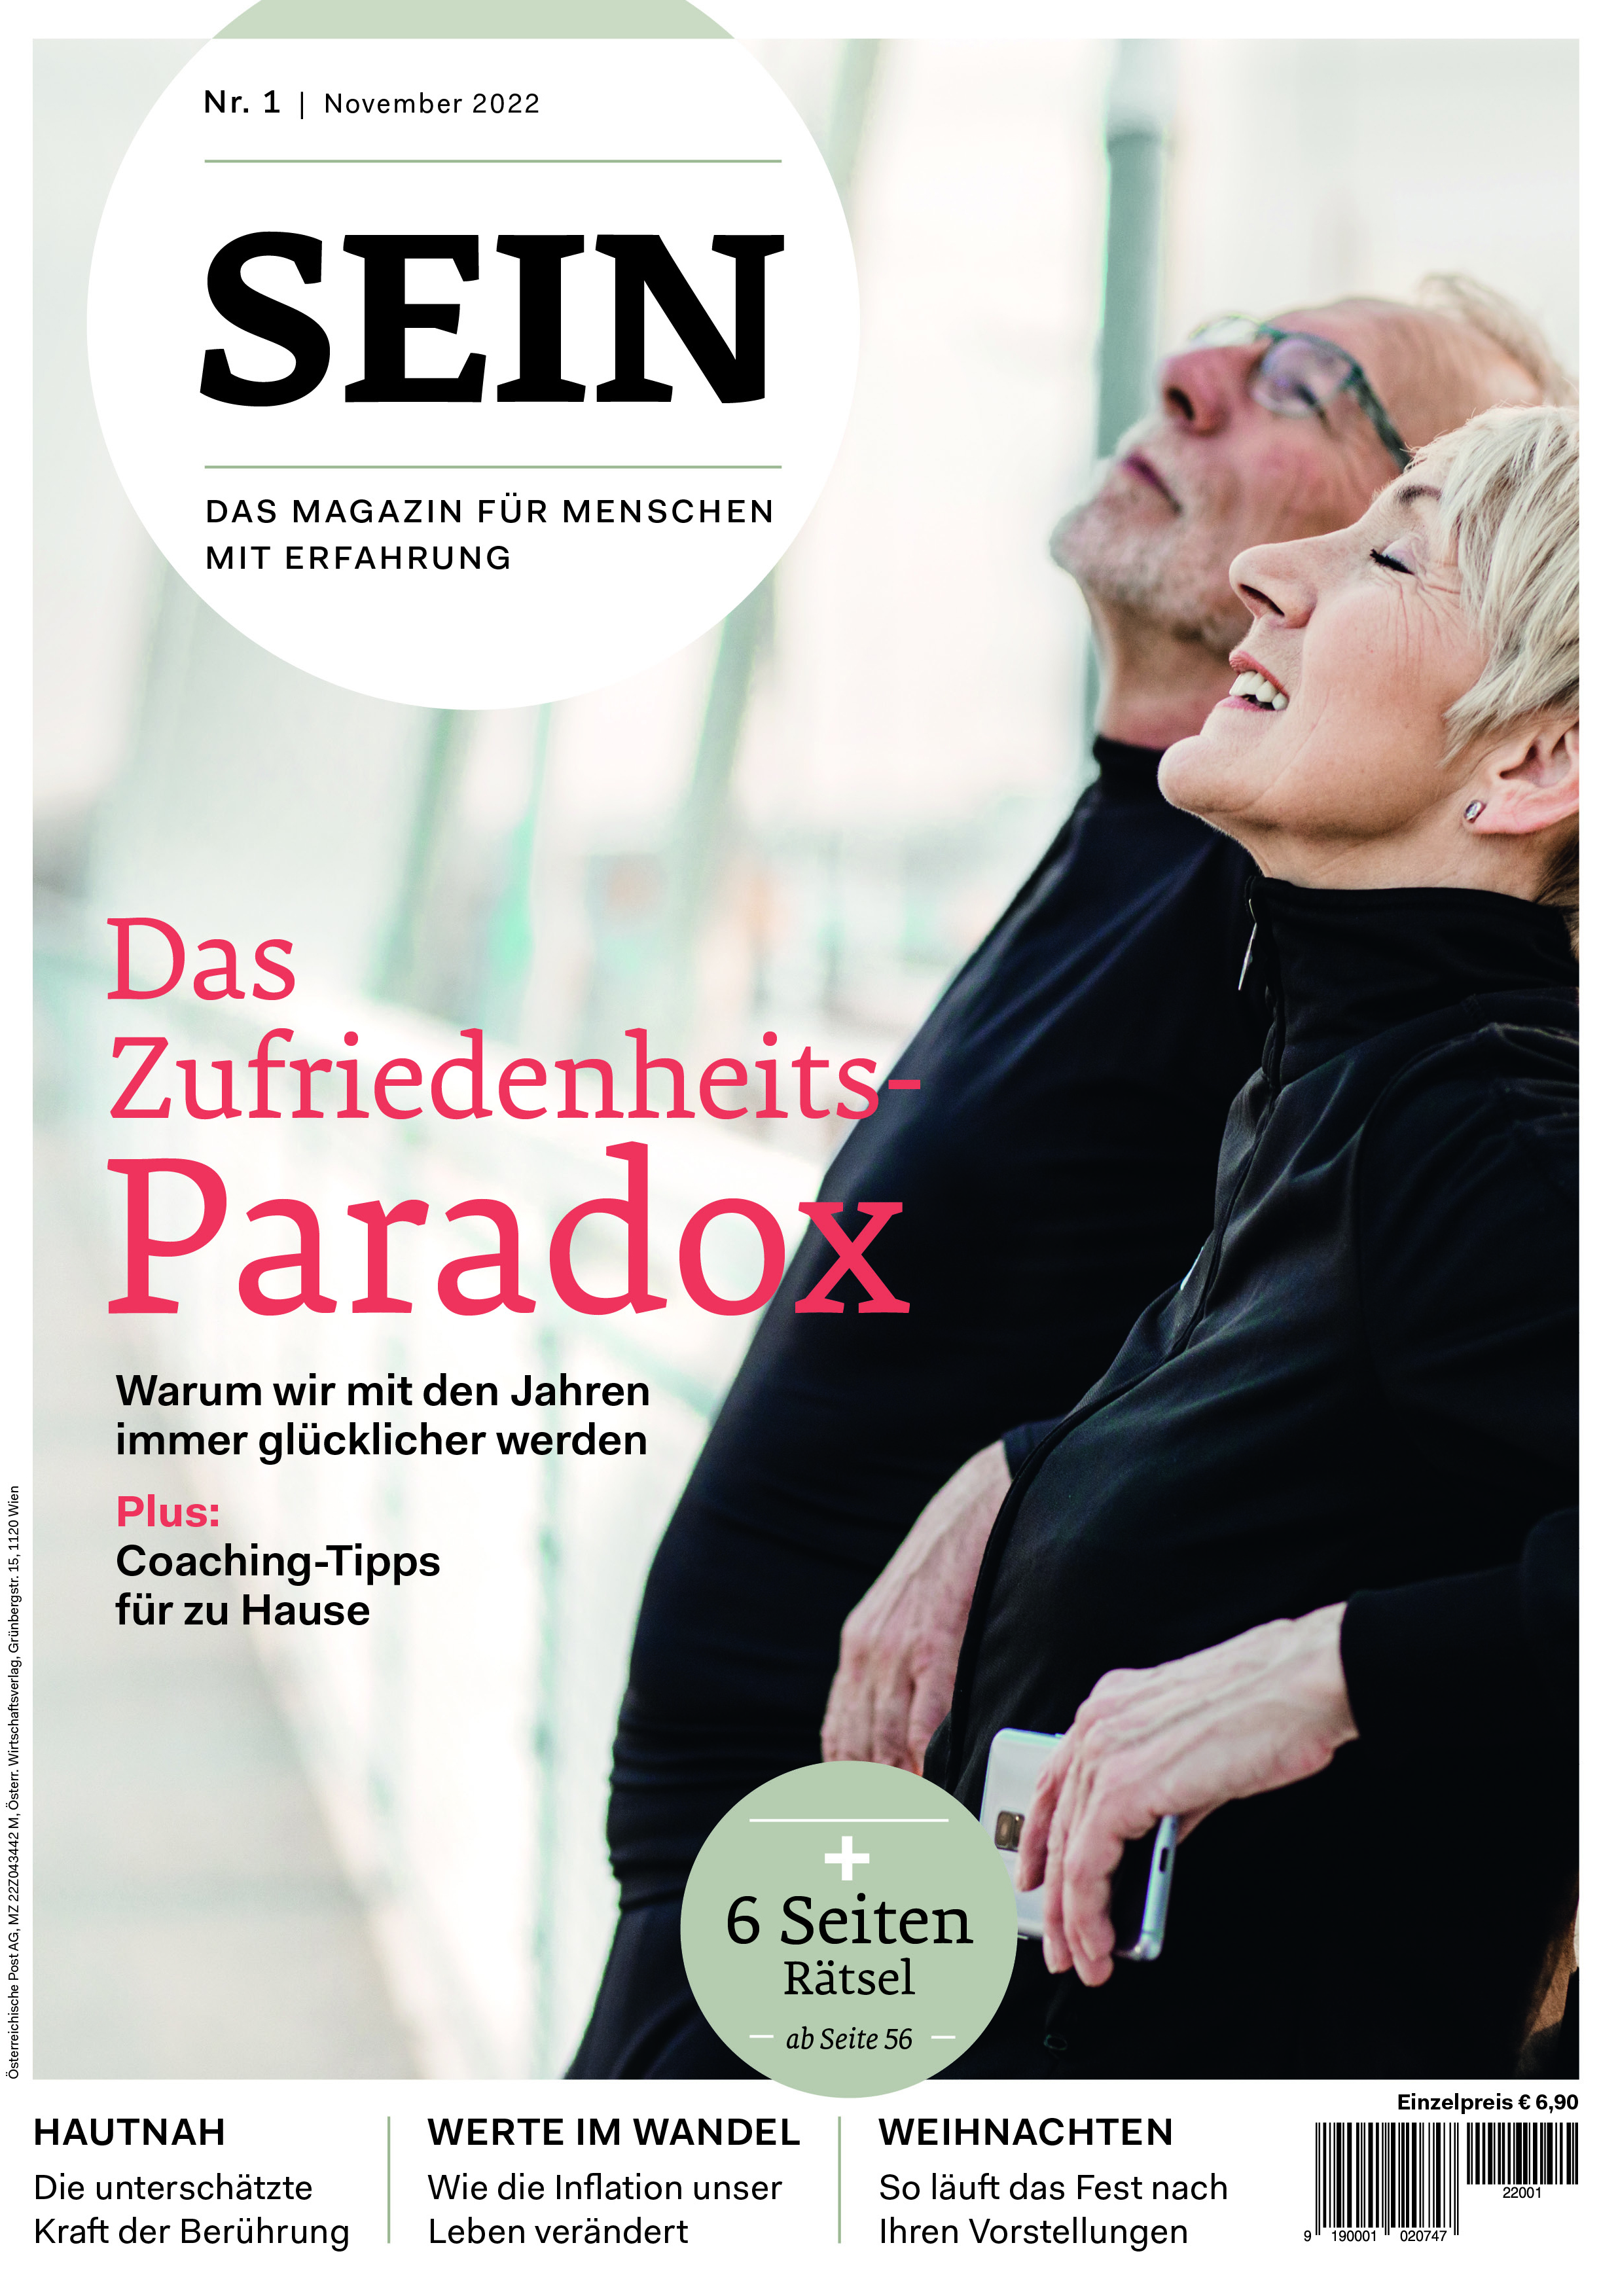 SEIN Magazin Cover